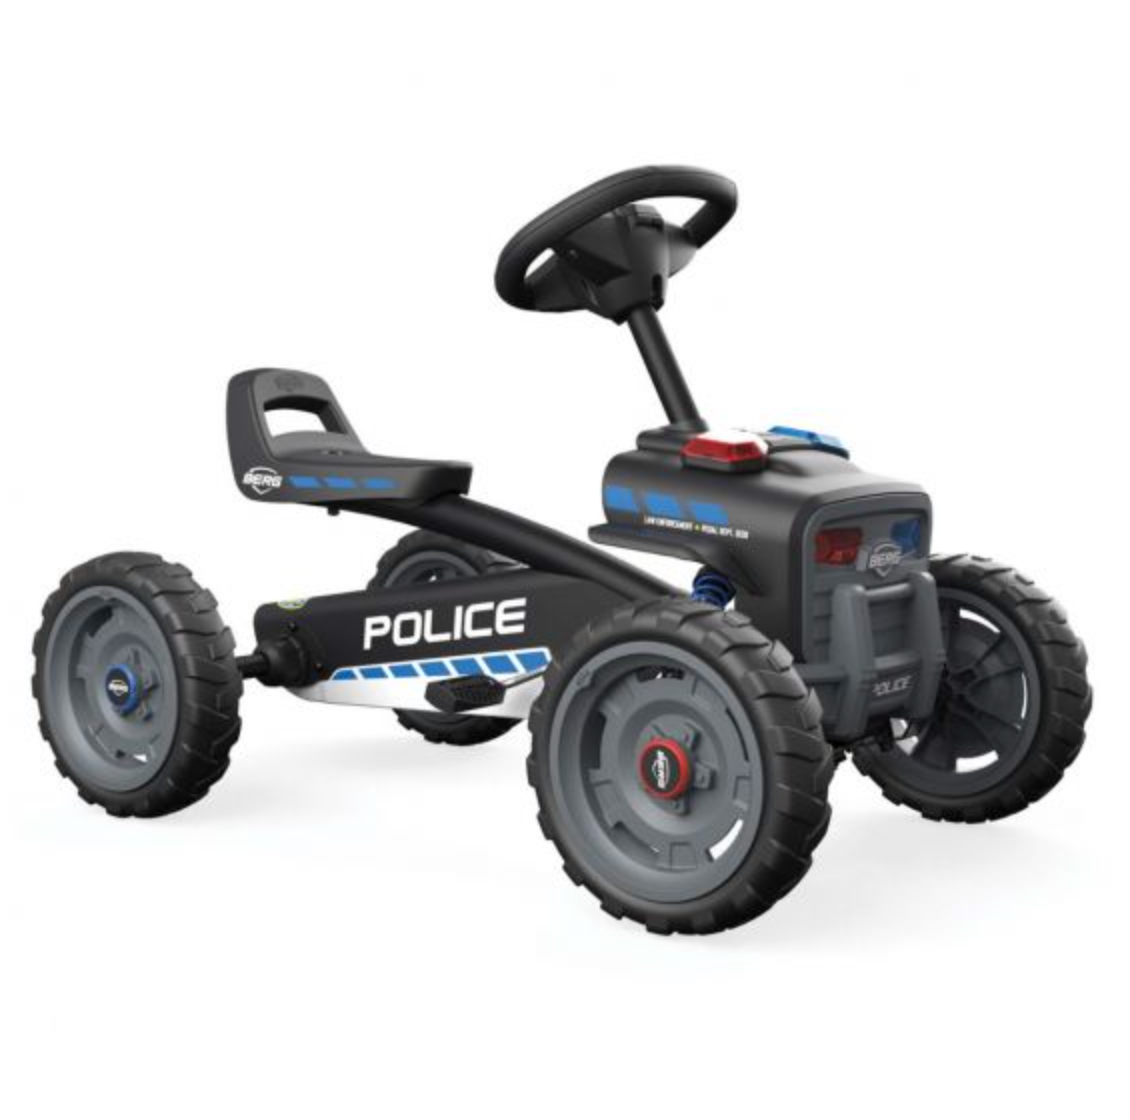 BERG Buzzy Police Pedal Kart - WePlayAlot